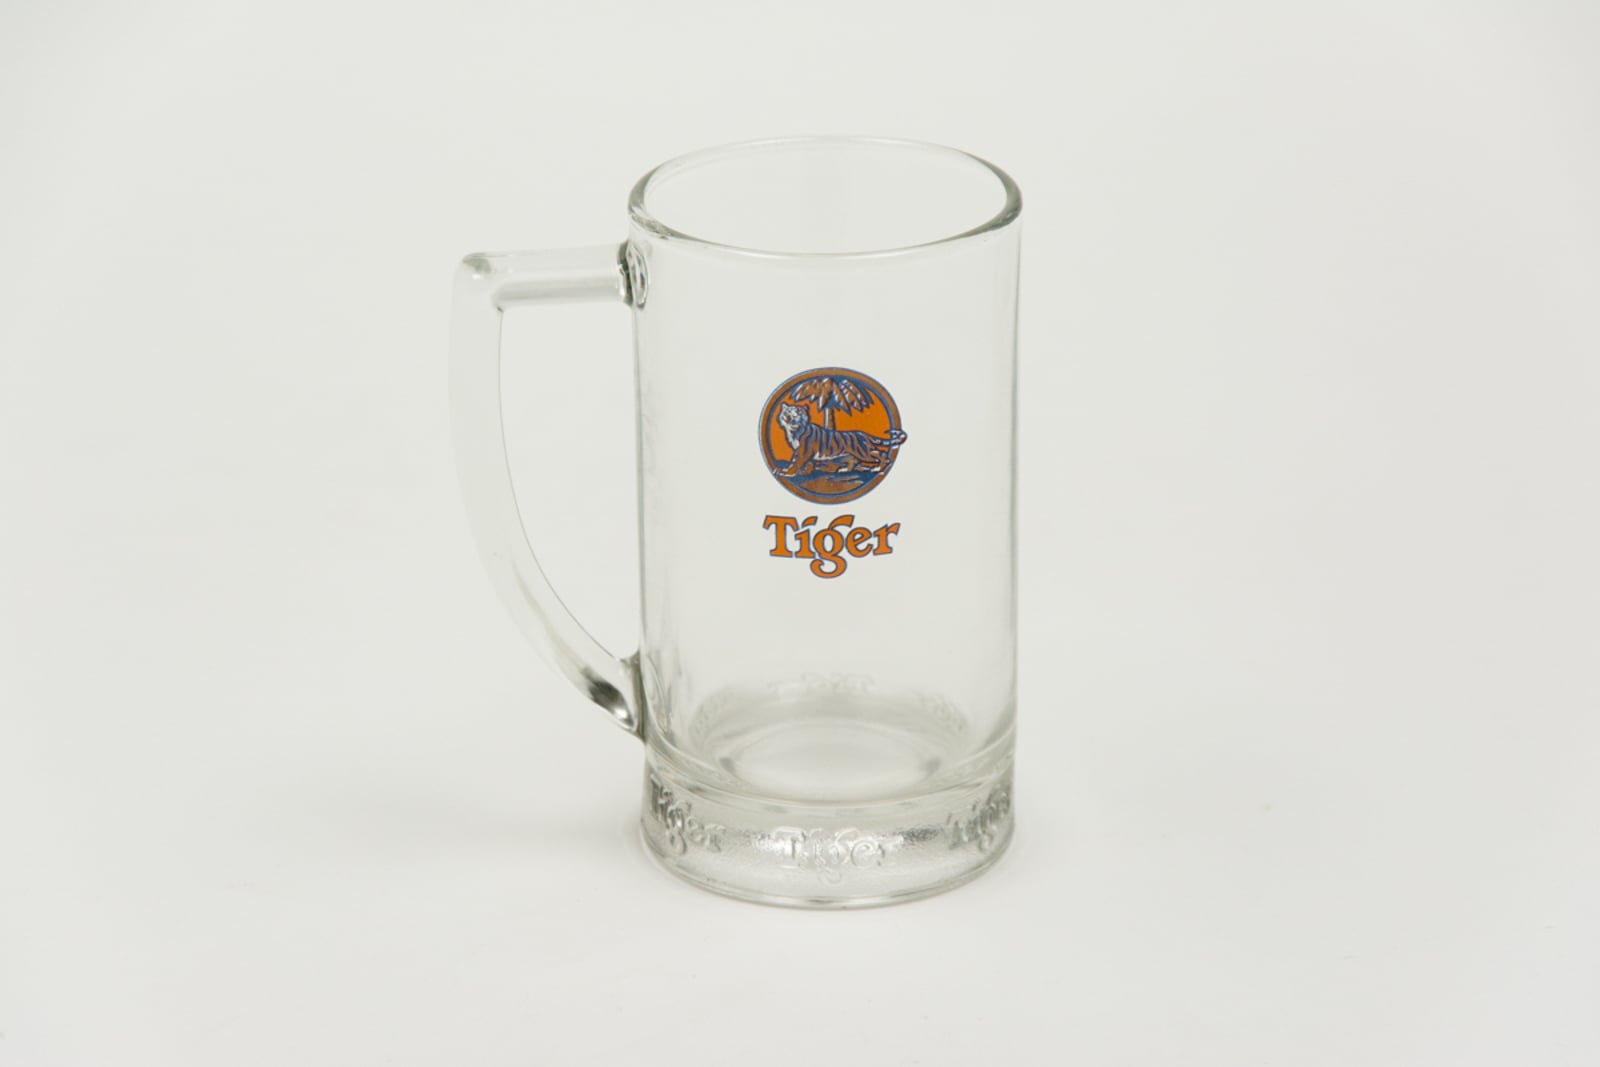 Tiger Mug Glassware